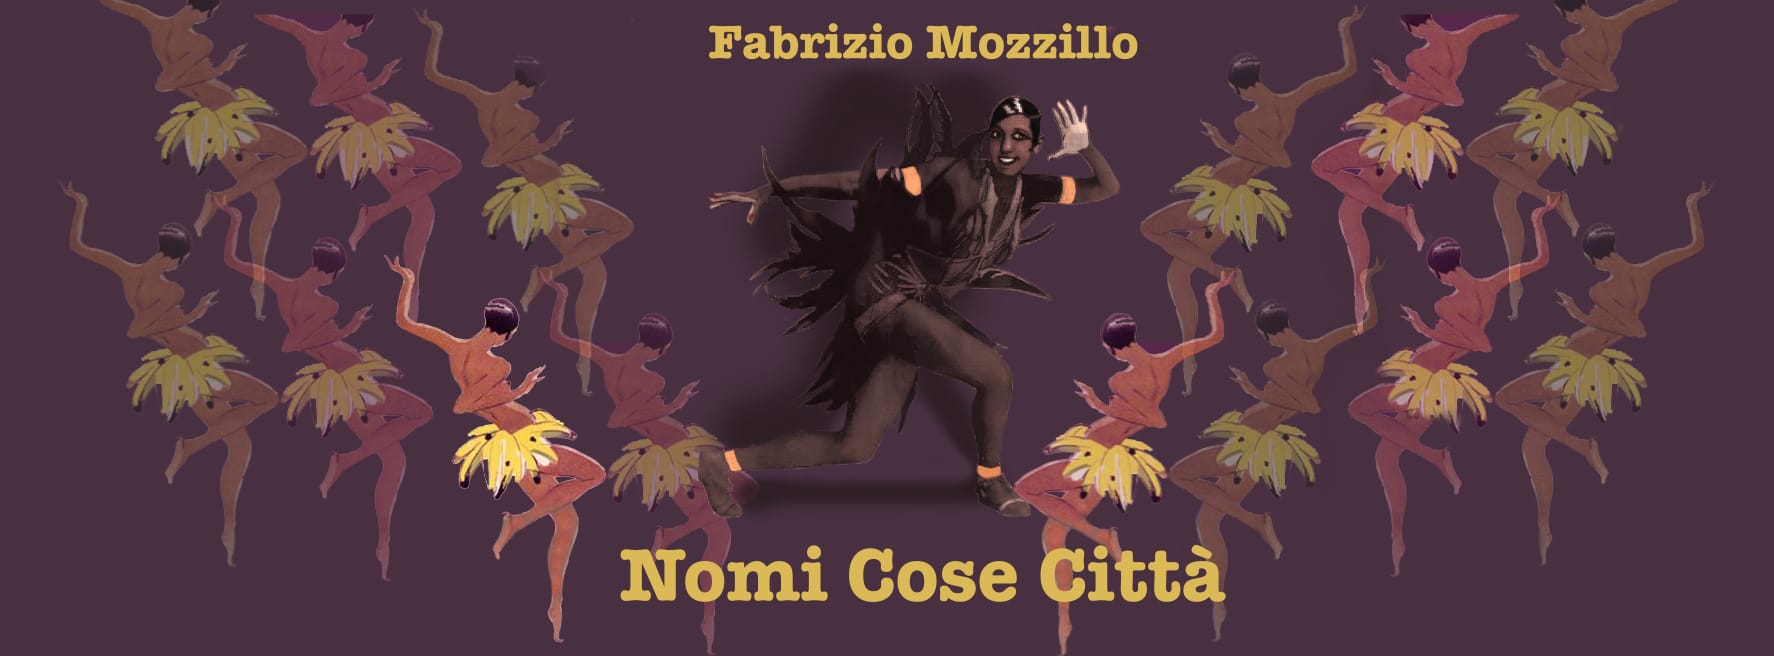 Al momento stai visualizzando “Nomi Cose Città”, il primo disco di Fabrizio Mozzillo